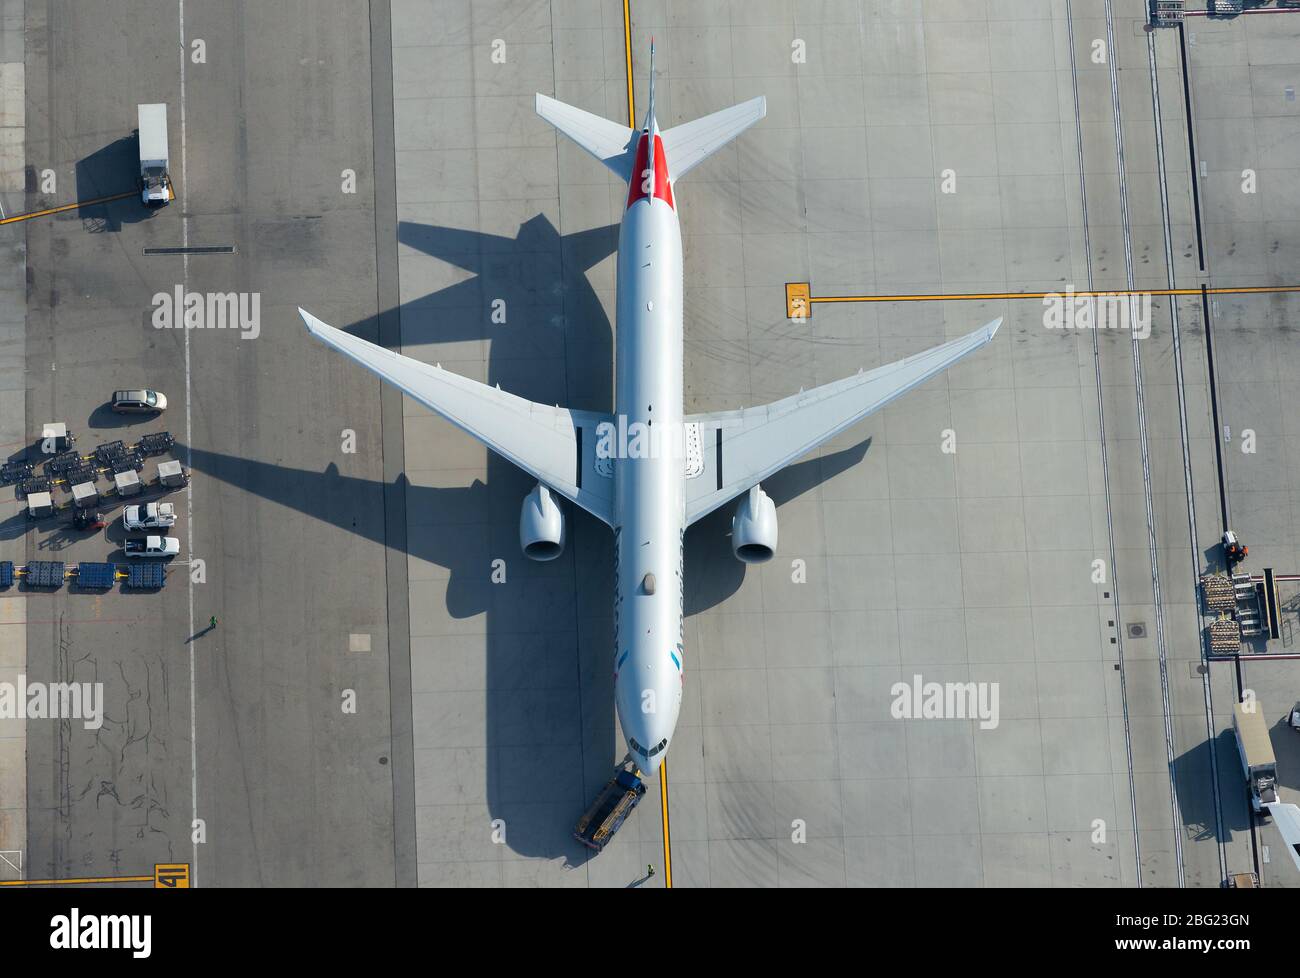 American Airlines Boeing 777 wird am Los Angeles International Airport abgeschleppt. Luftaufnahme von 777-300 Flugzeugen, die als N726AN registriert sind. Stockfoto